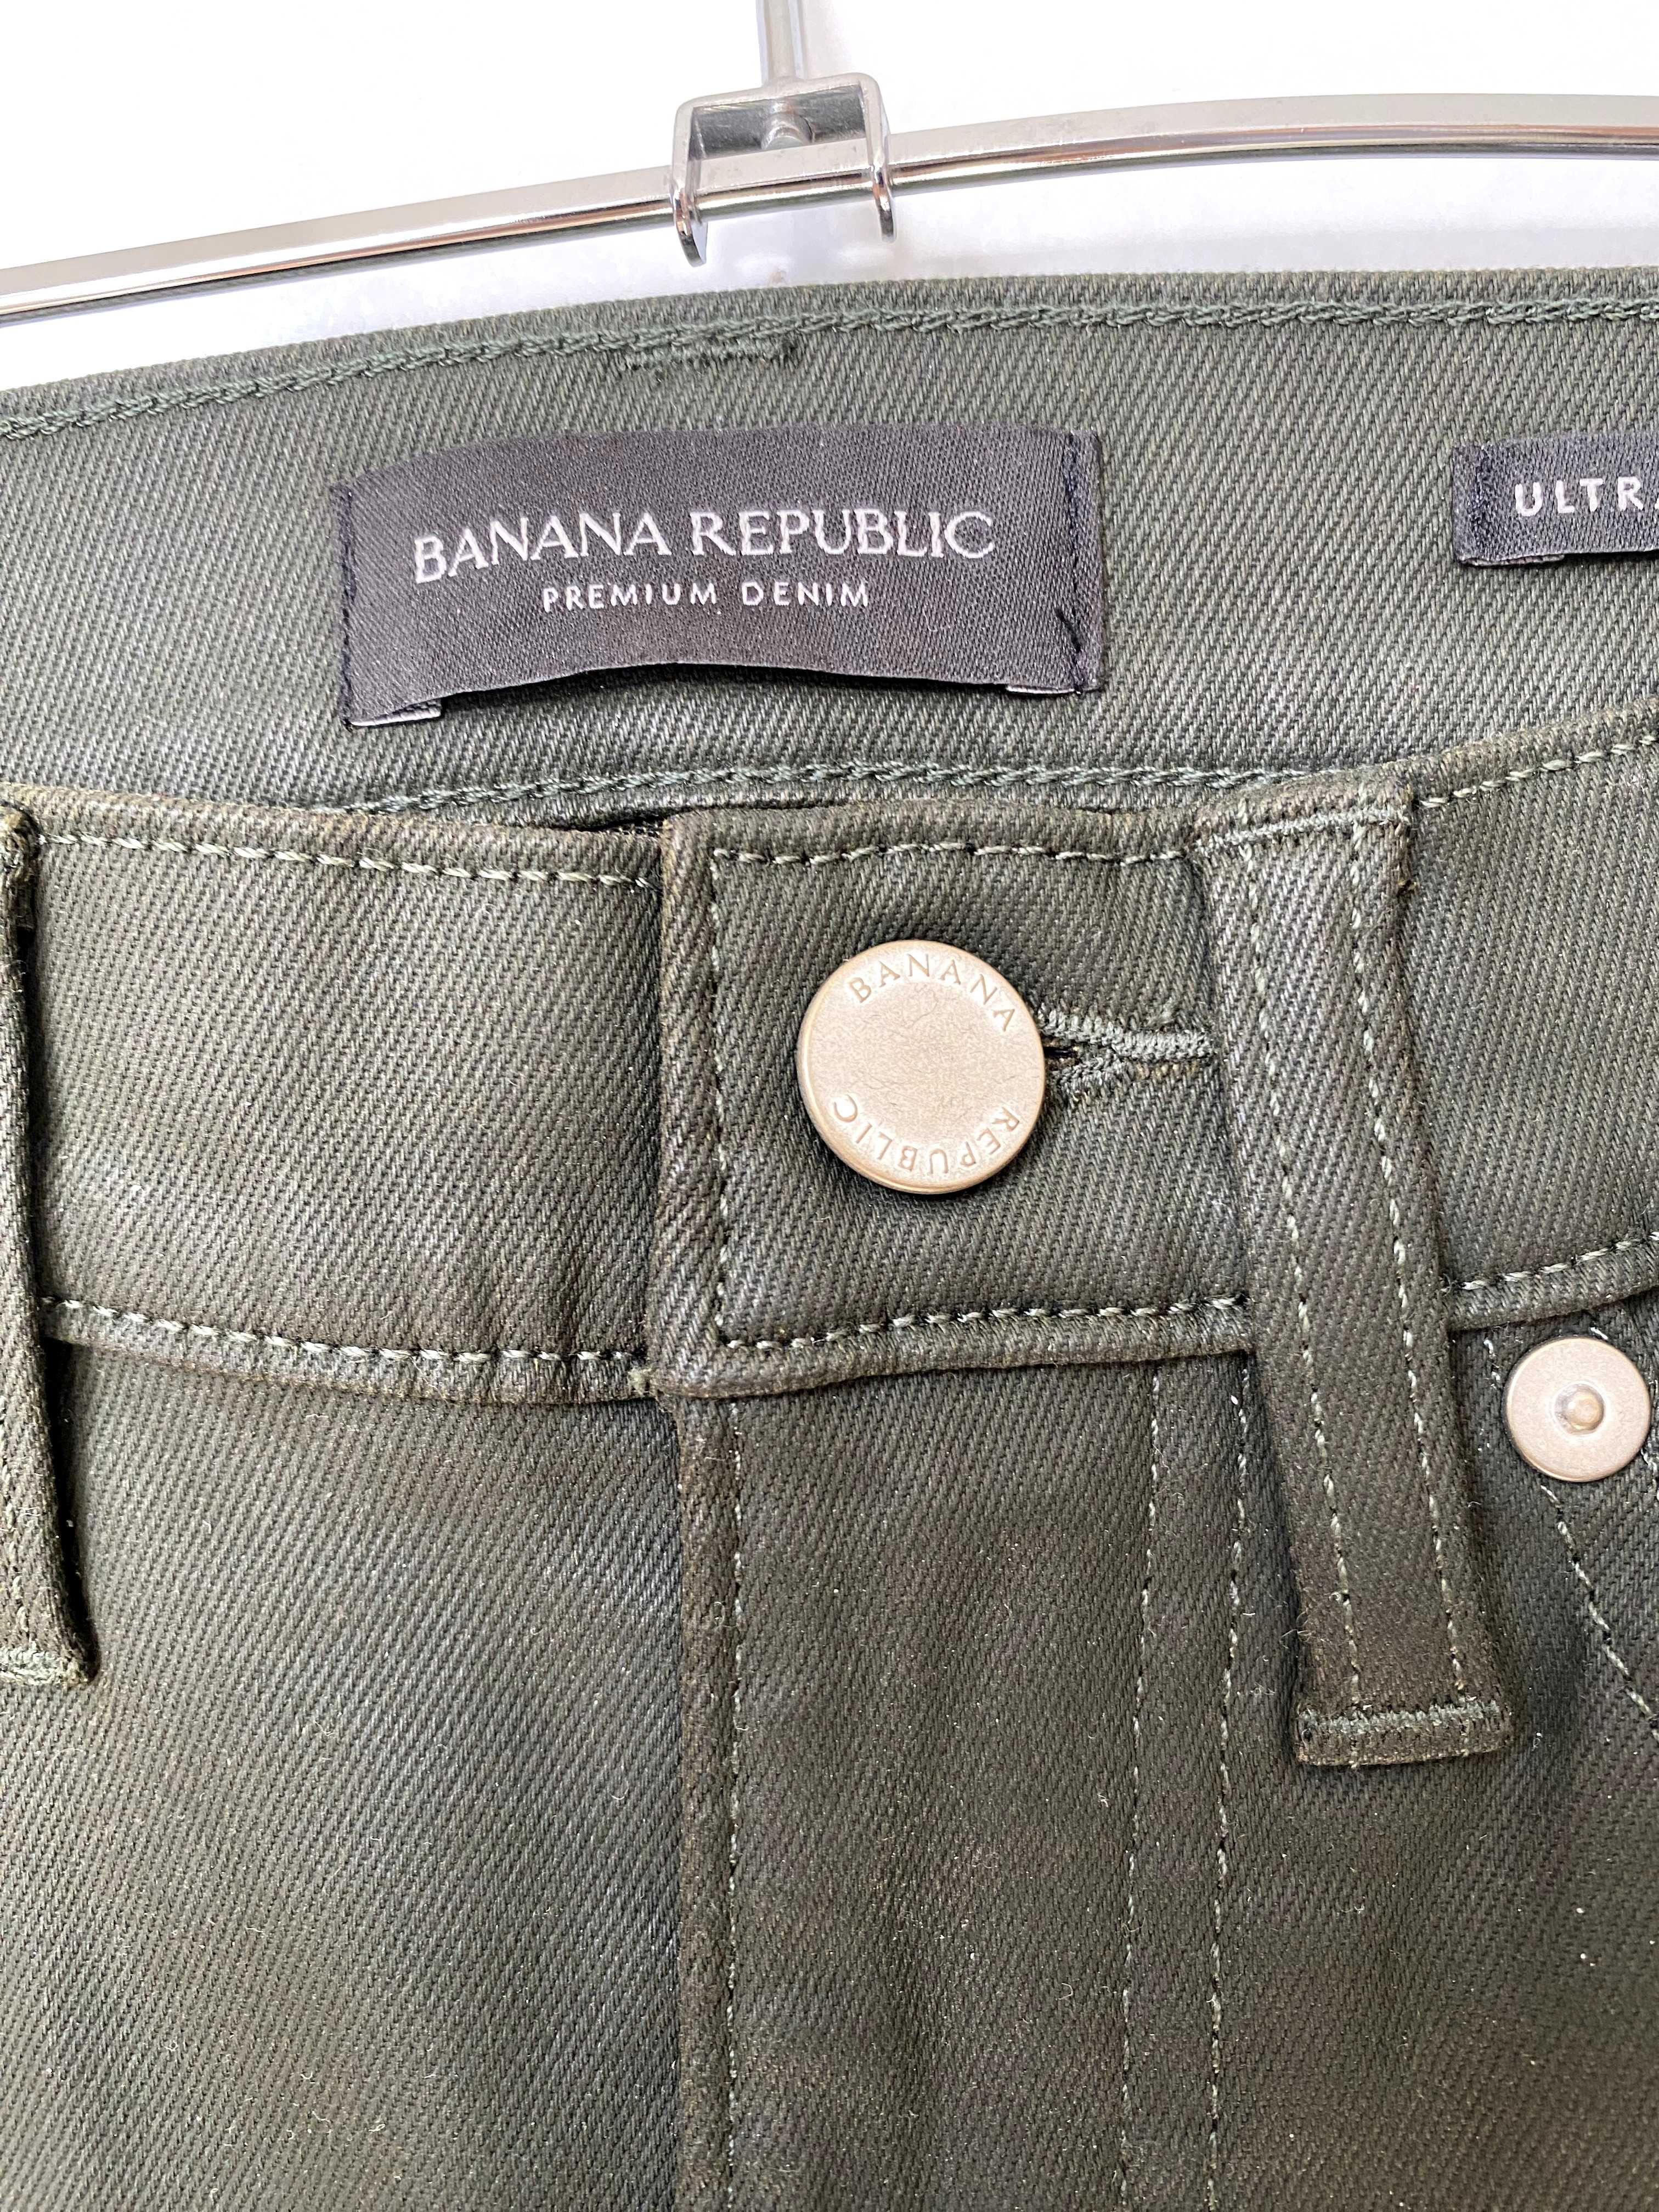 Дамски панталон "Banana Republic" – нов, еластичен